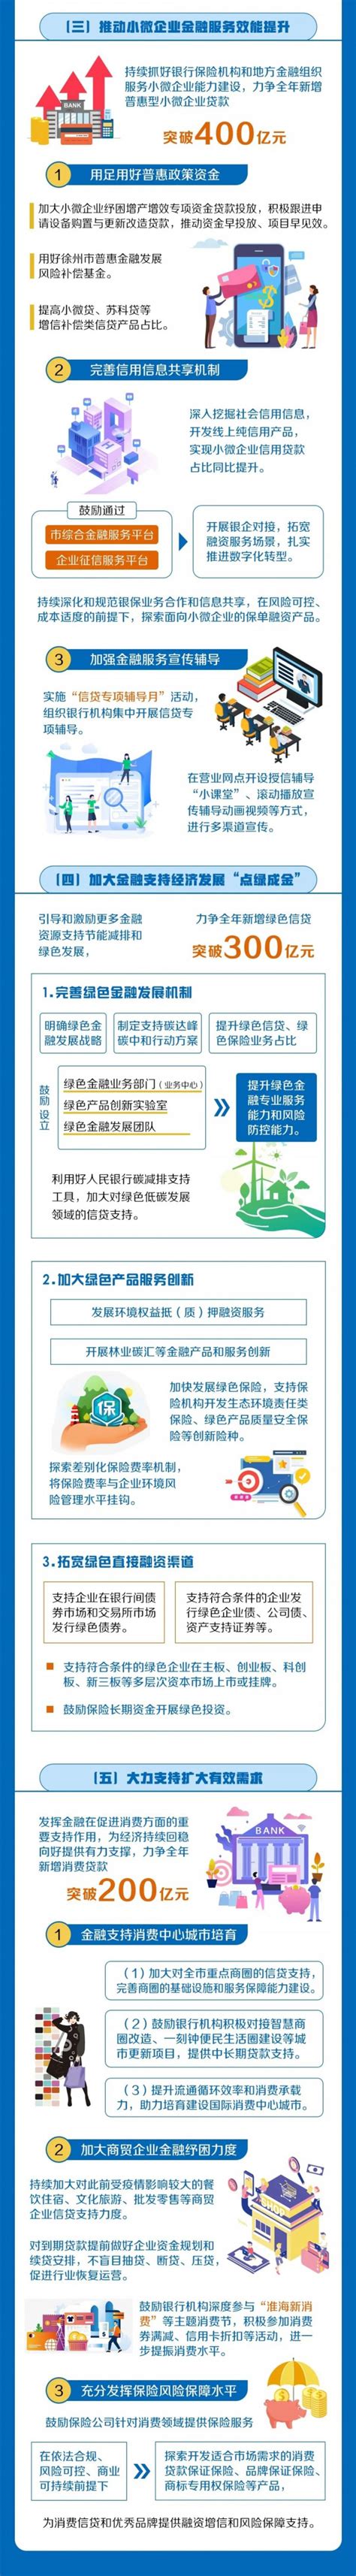 2021年徐州市银行业普及金融知识万里行活动系列报道之六_消费